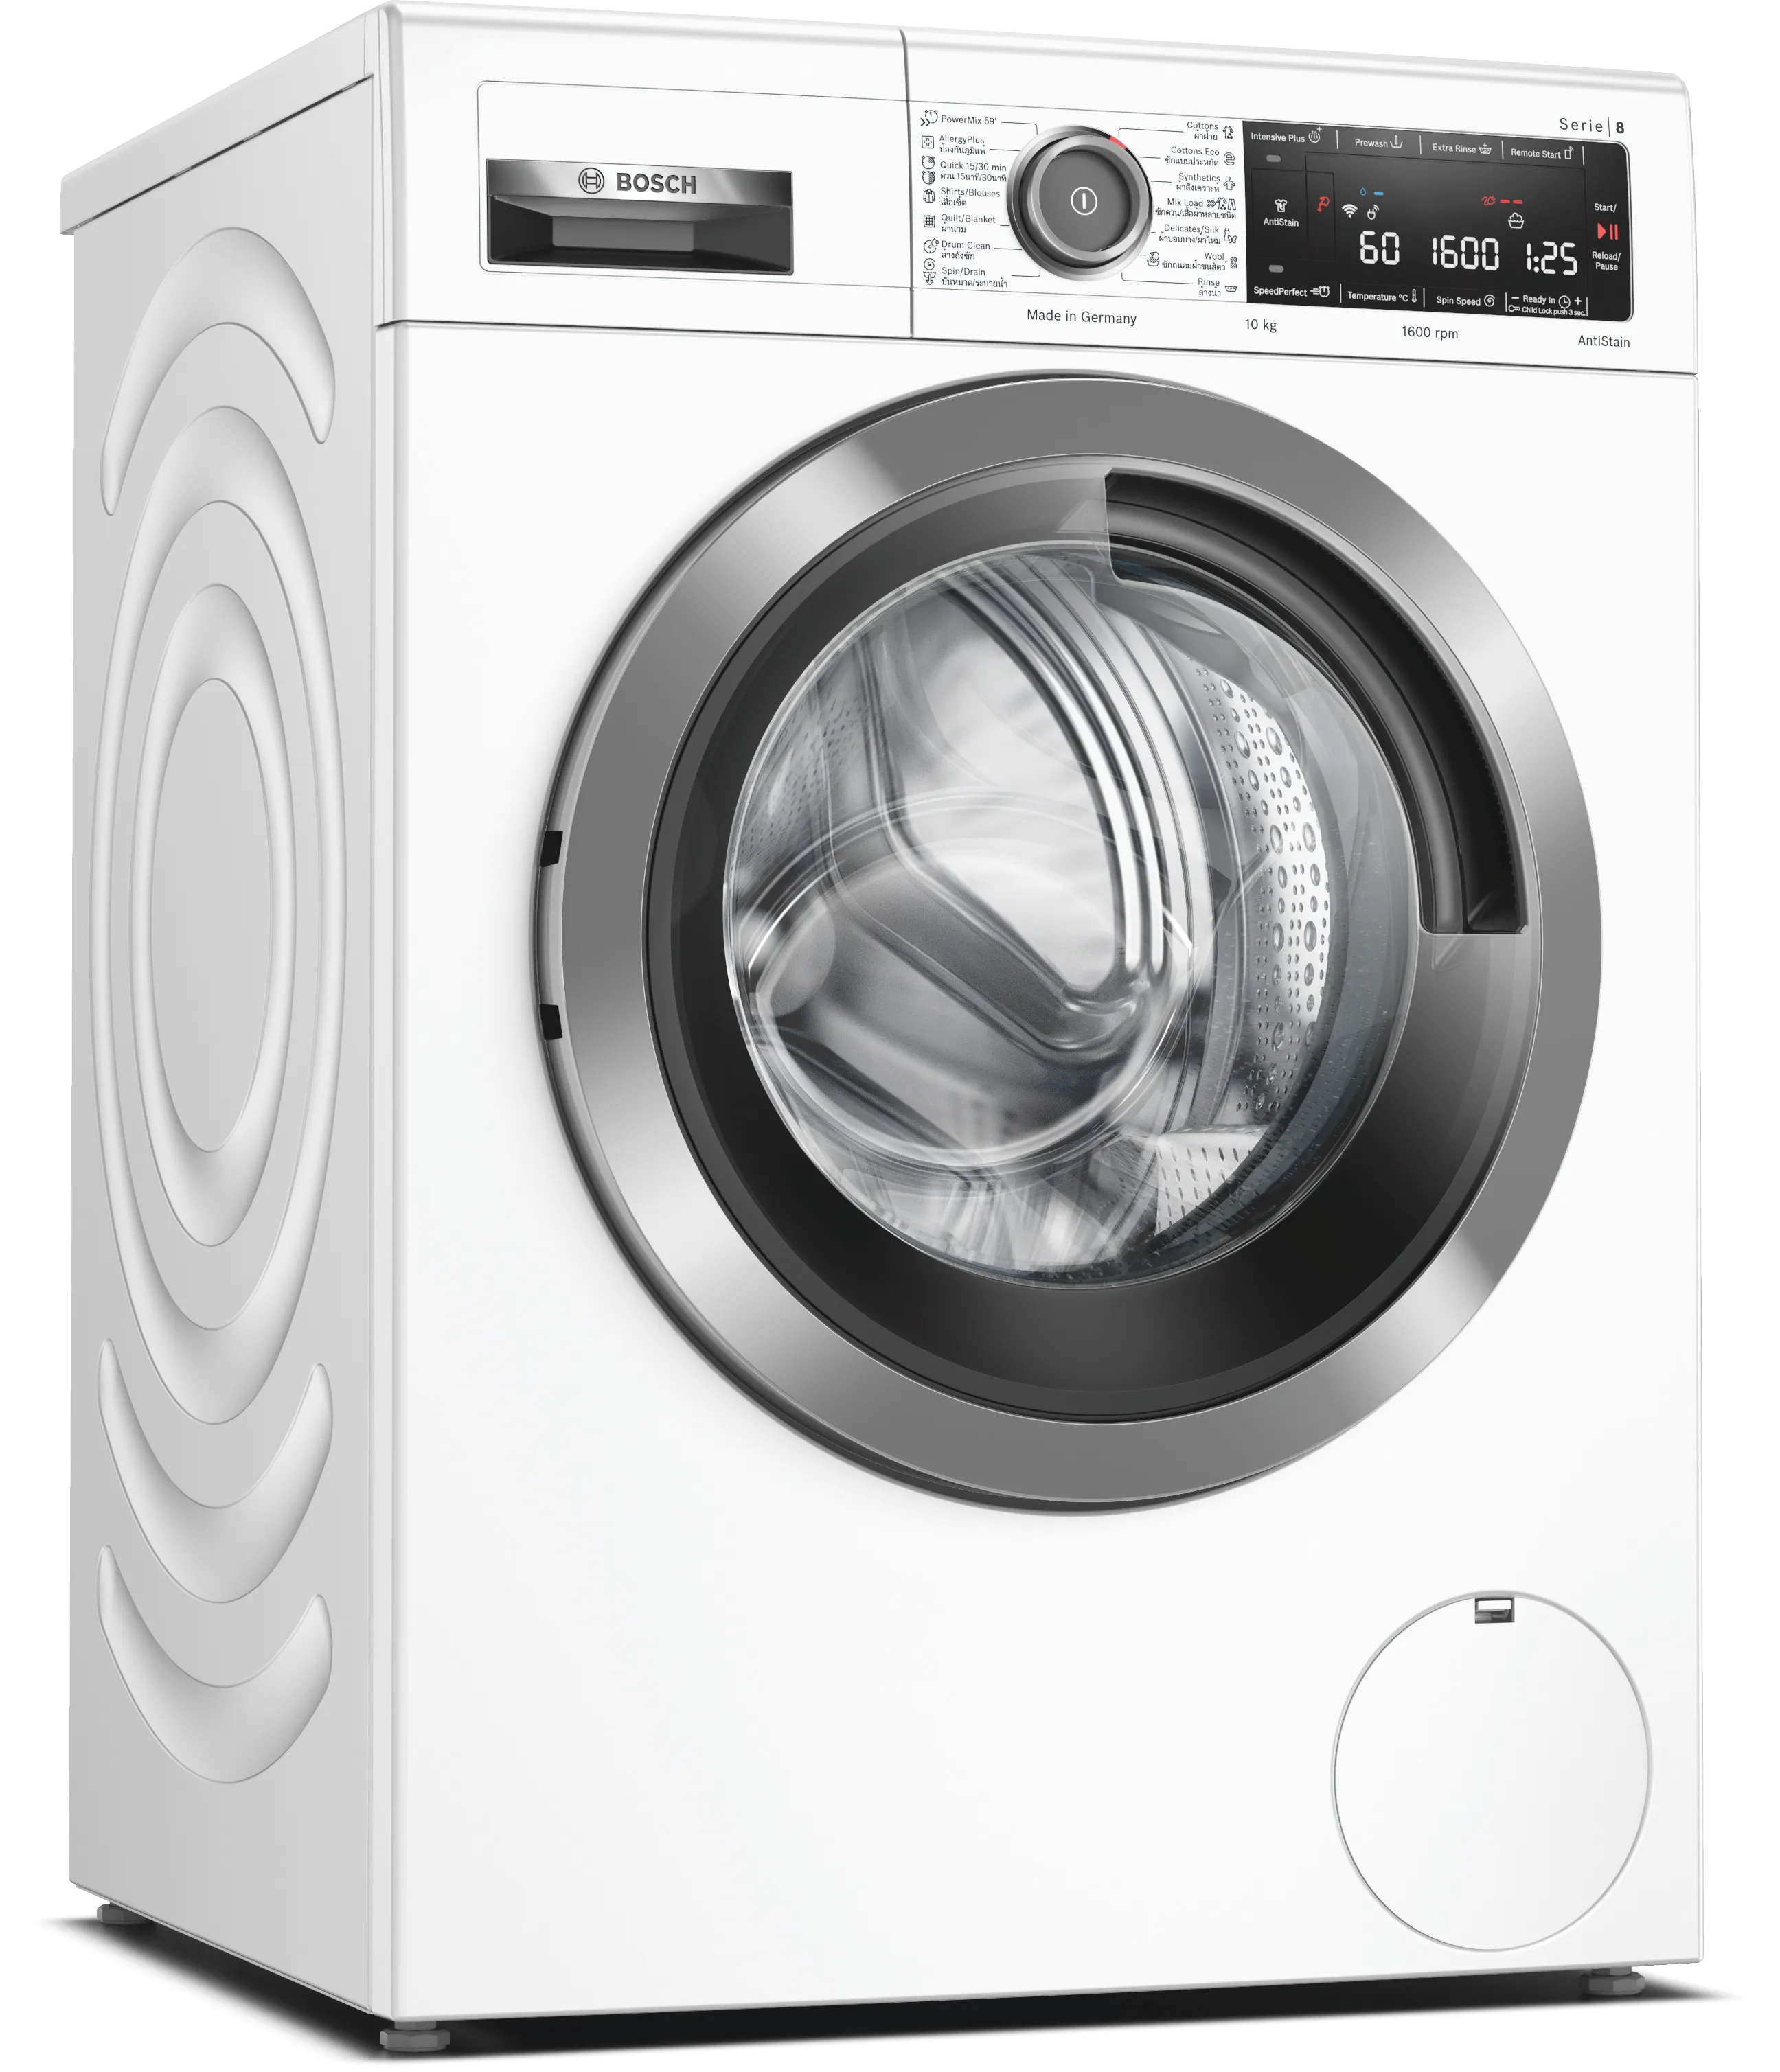 Series 8 washing machine, front loader 10 kg 1600 rpm 